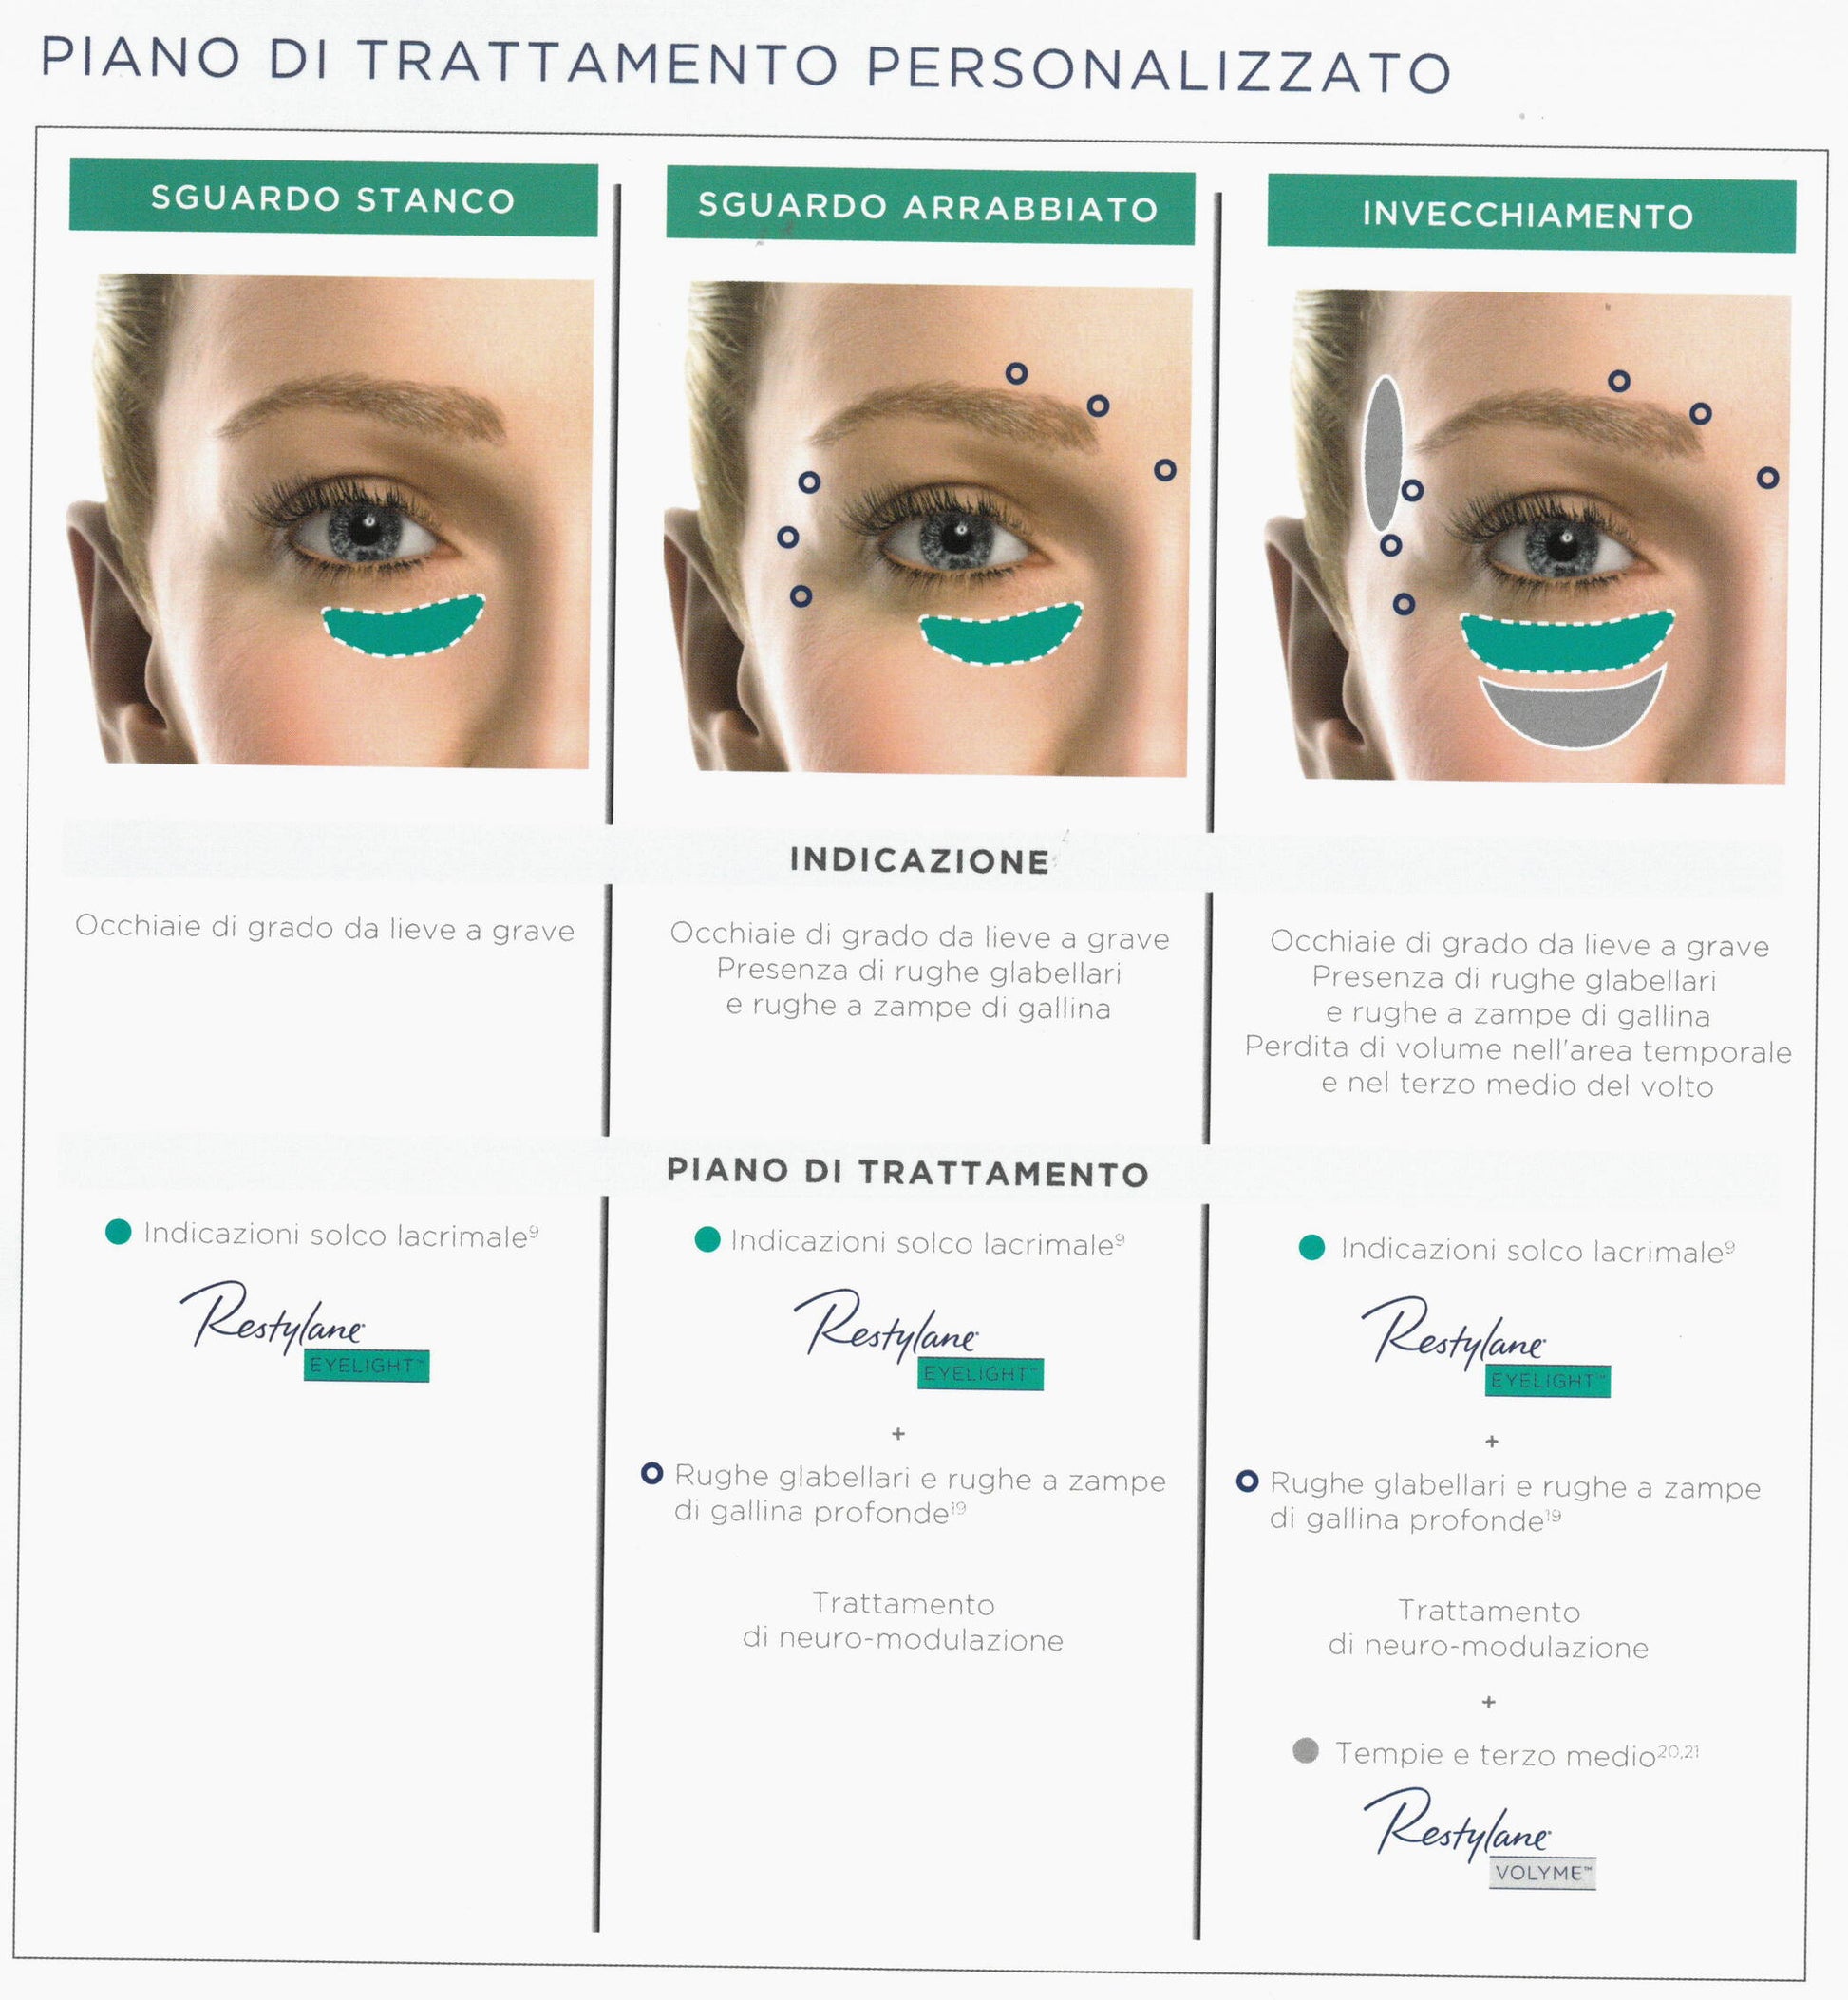 Restylane Eyelight
Contiene 1 siringa da 0.5ml
Indicato per per il trattamento della zona per-orbitale che riduce le occhiaie e le scanalature scure sotto gli occhi impedendo agli occhi di sembrare stanchi.